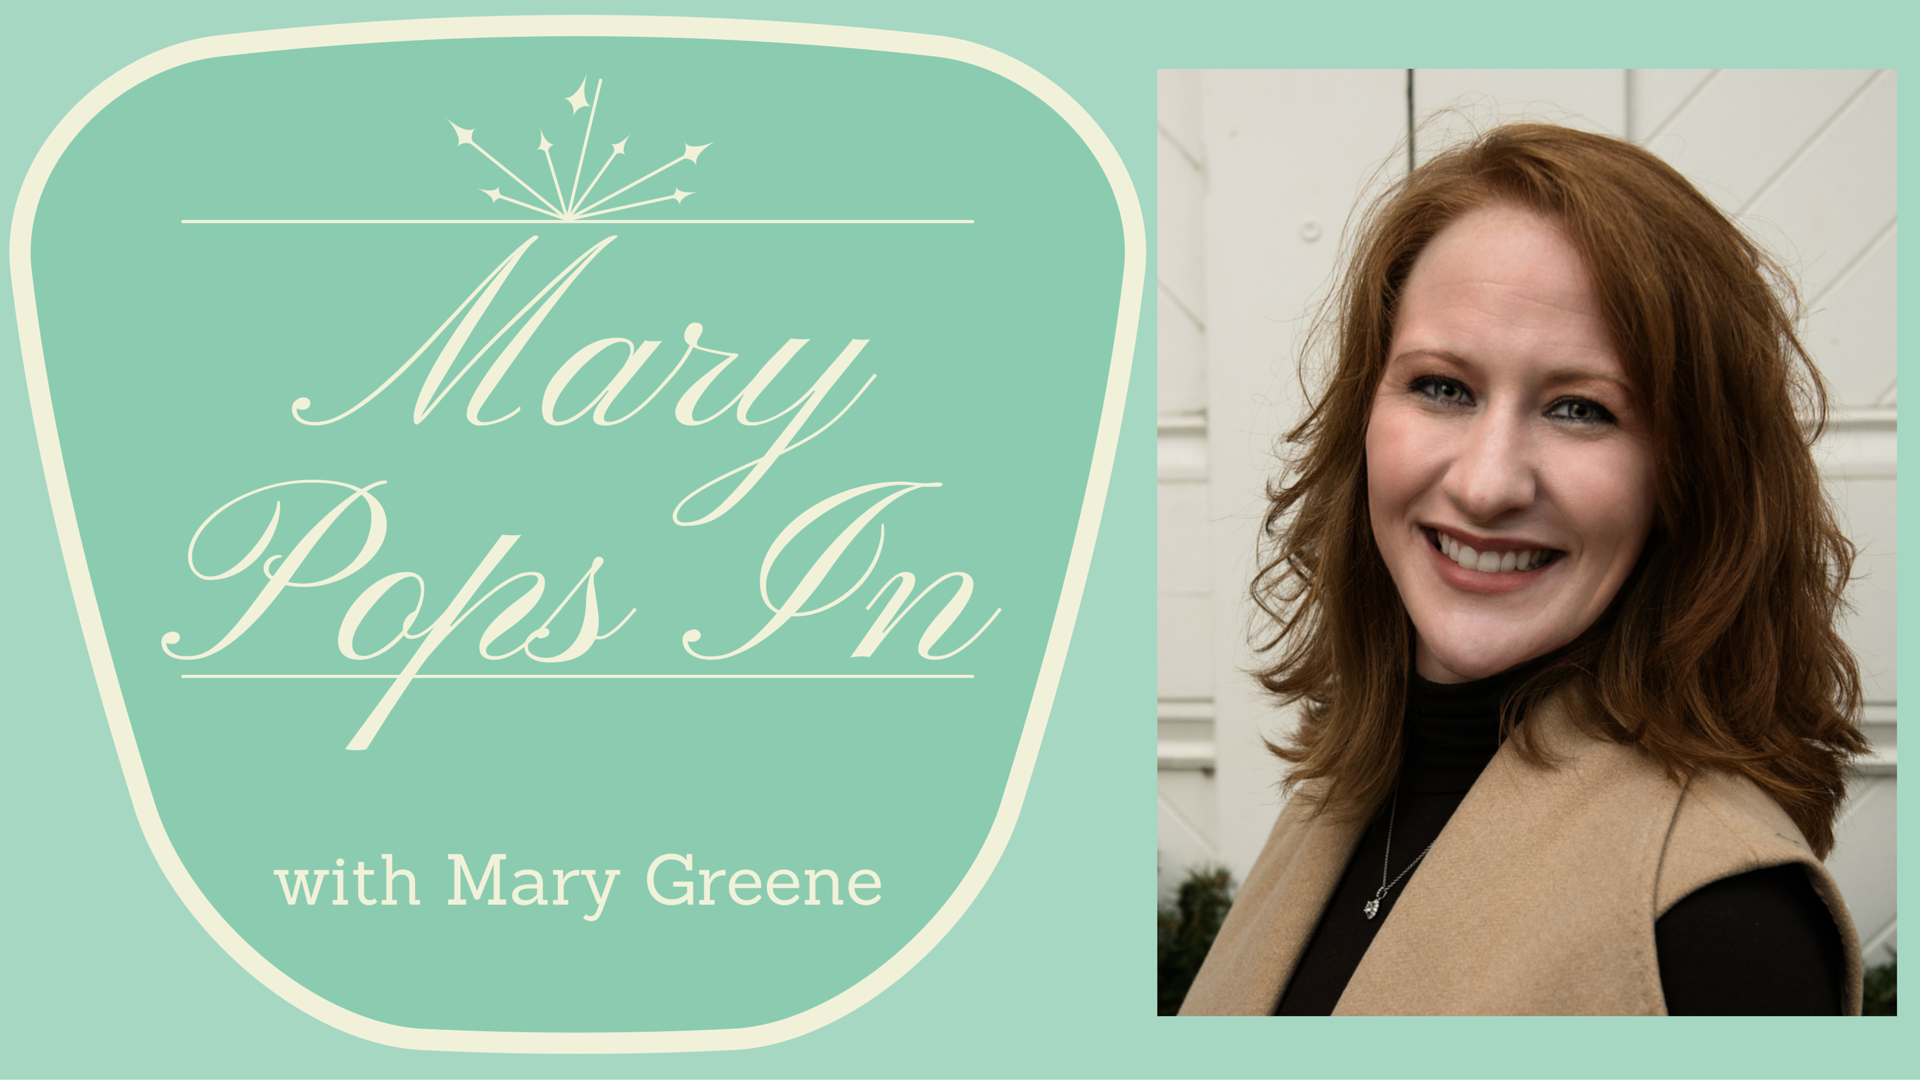 Mary Greene